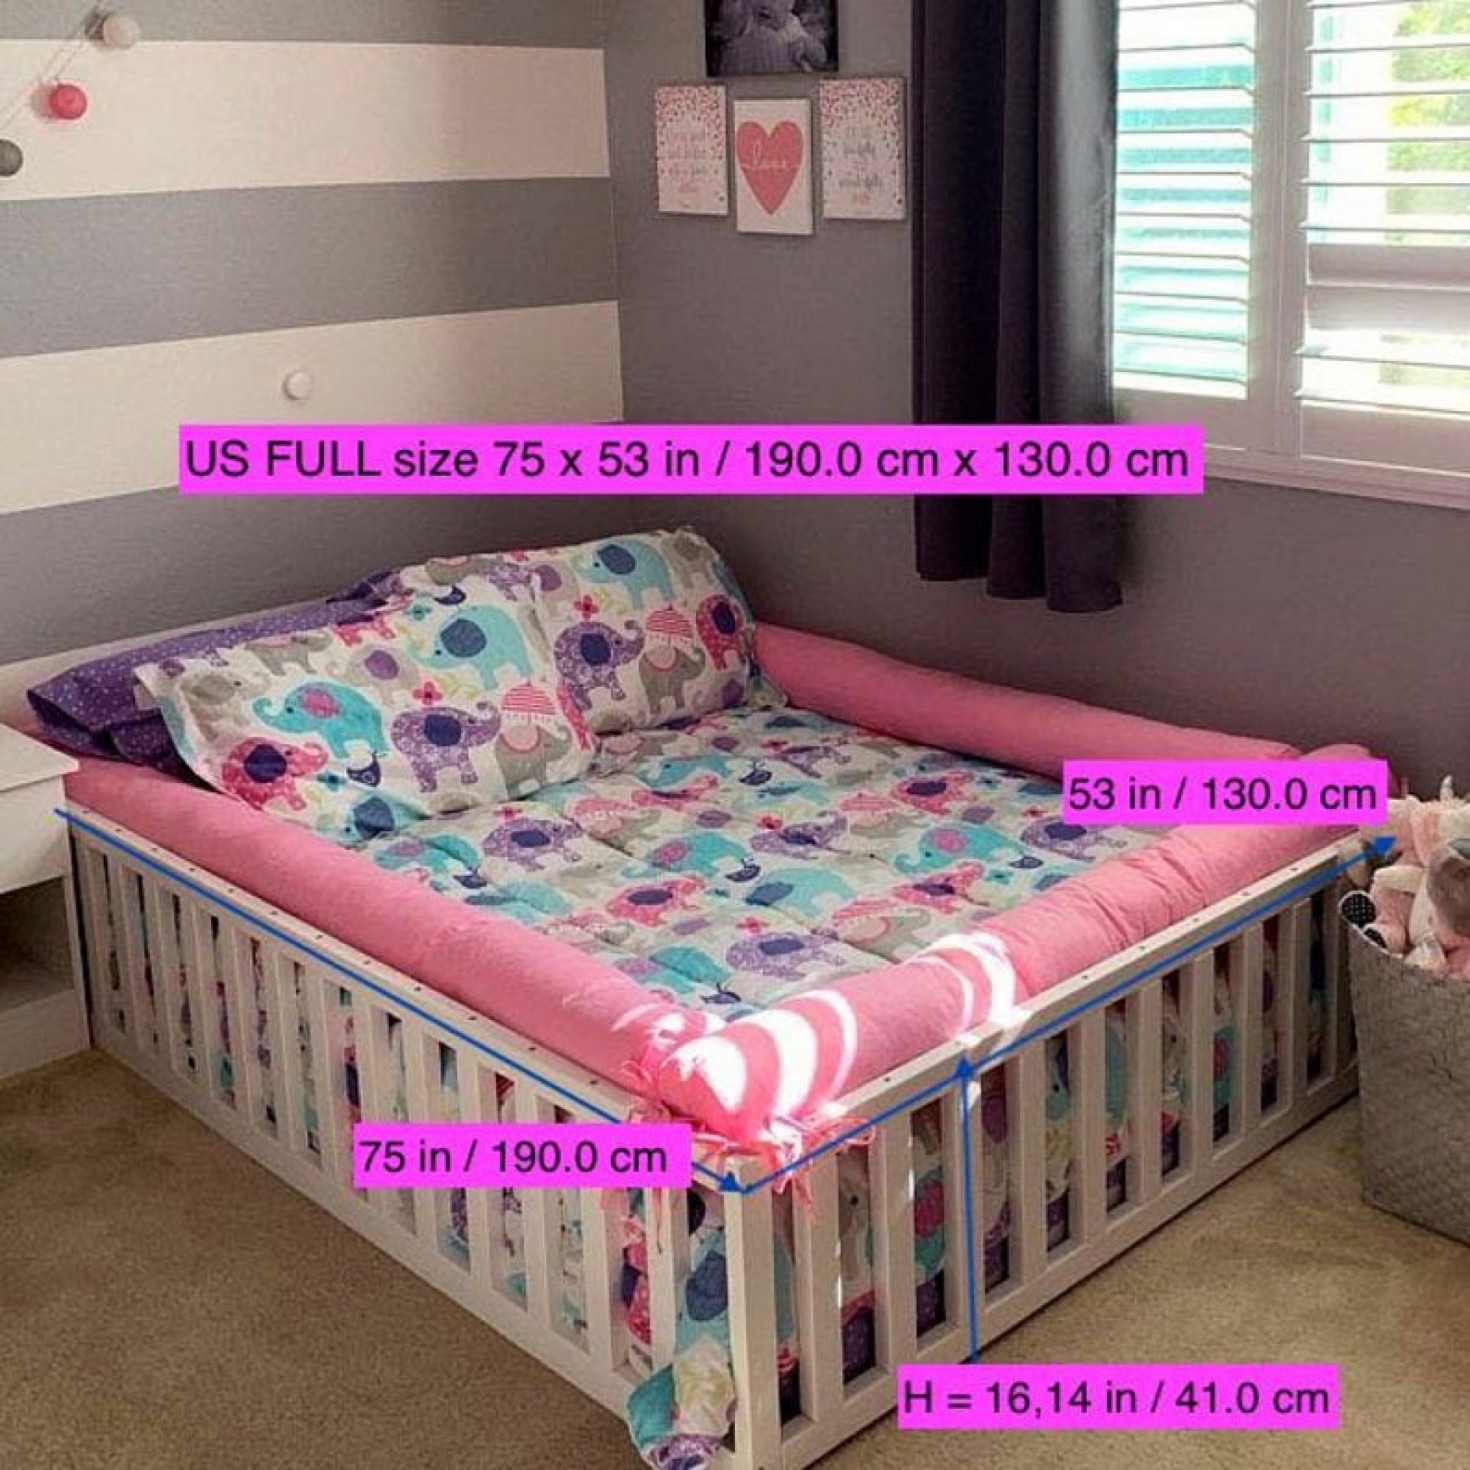 children's bed and mattress deals